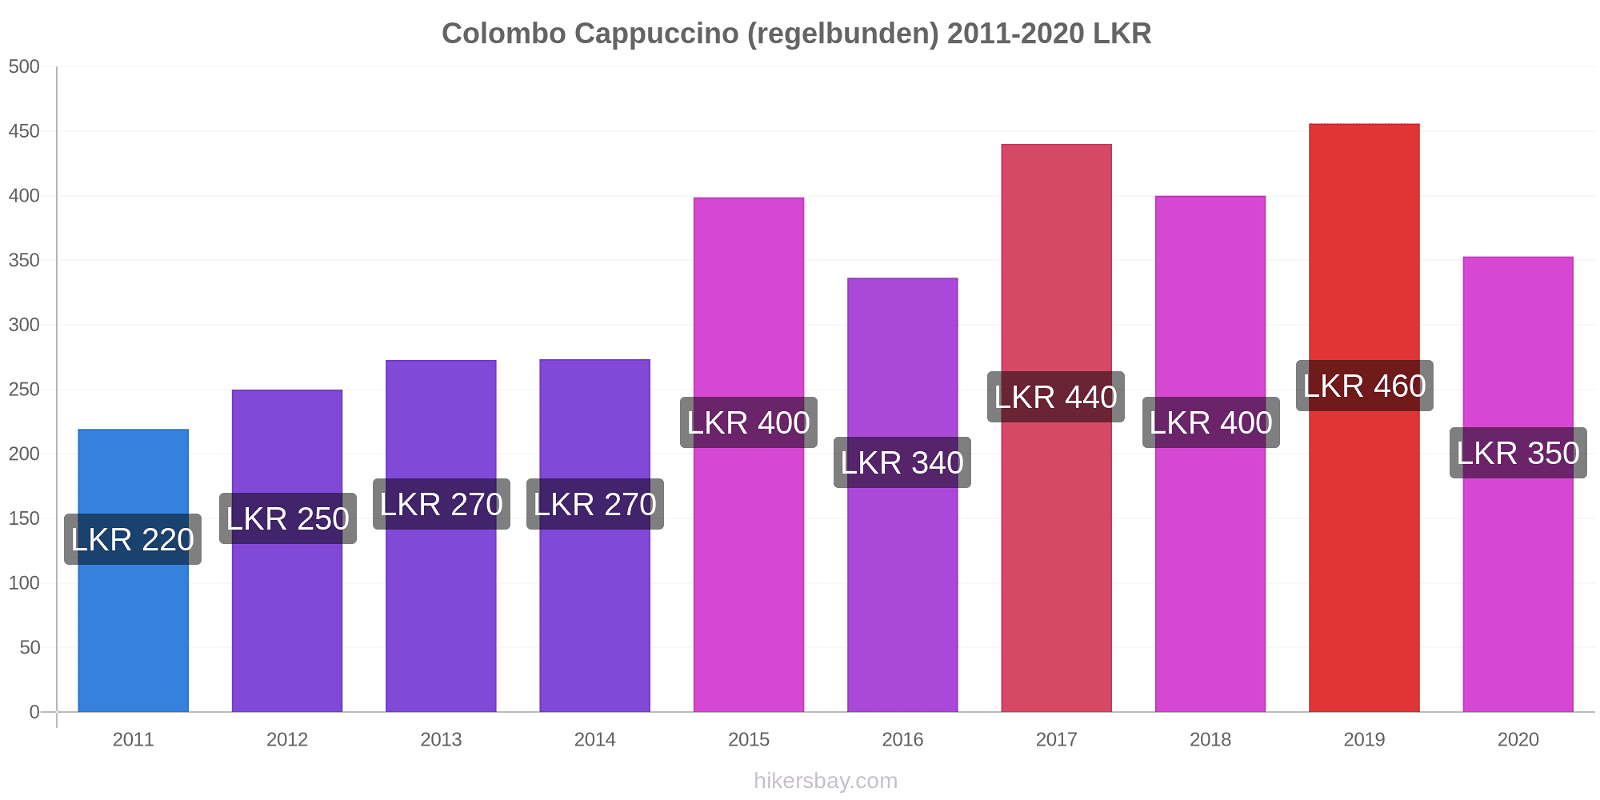 Colombo prisförändringar Cappuccino (regelbunden) hikersbay.com